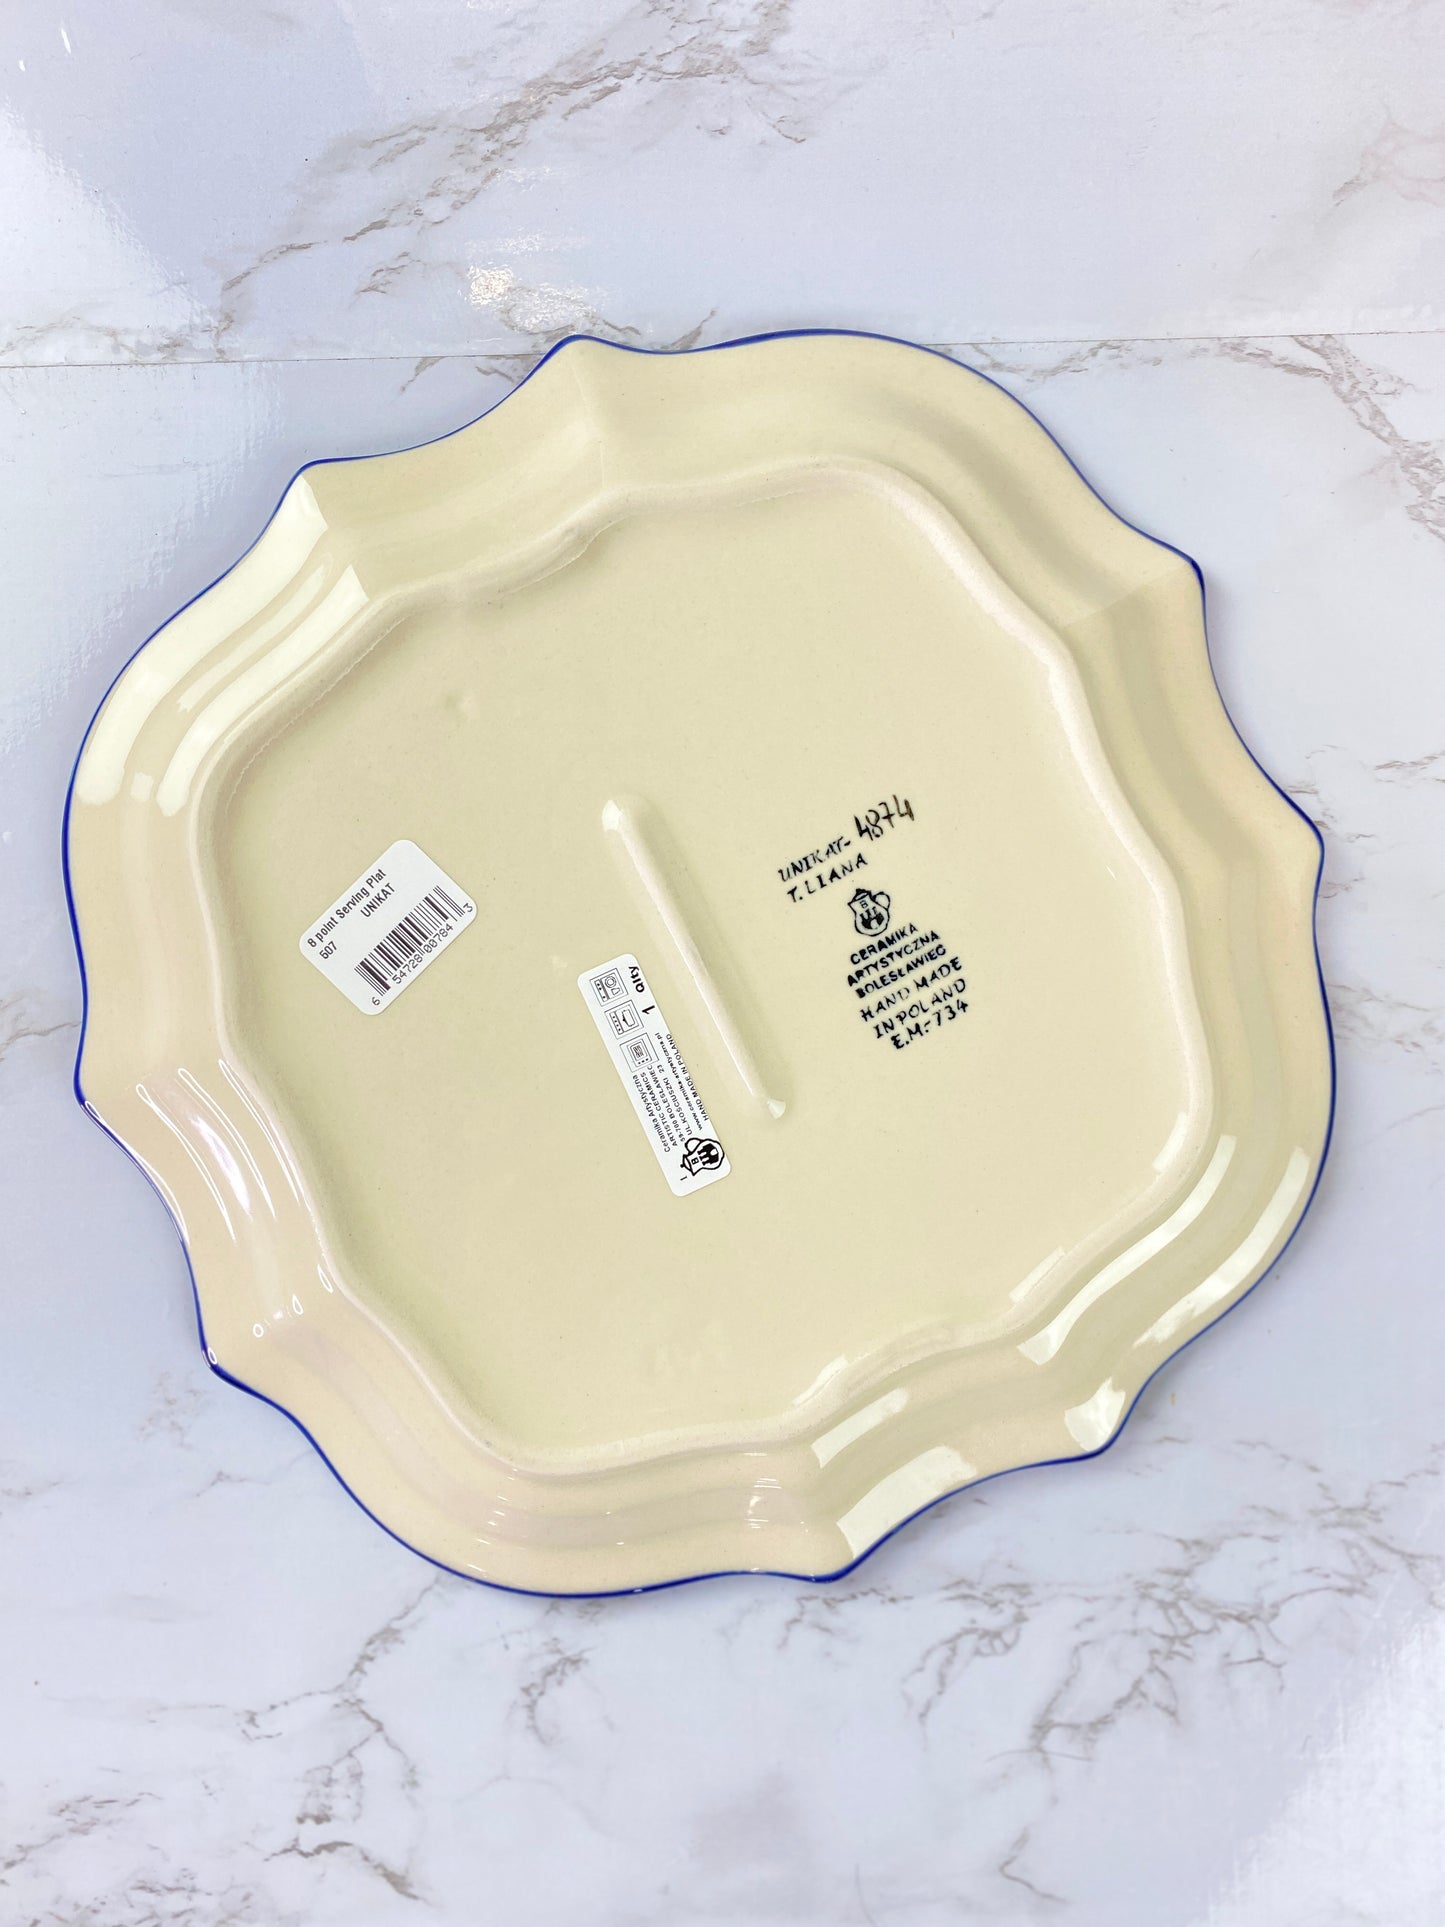 8 Pointed Unikat Platter/ Plate - Shape 507 - Pattern U4874